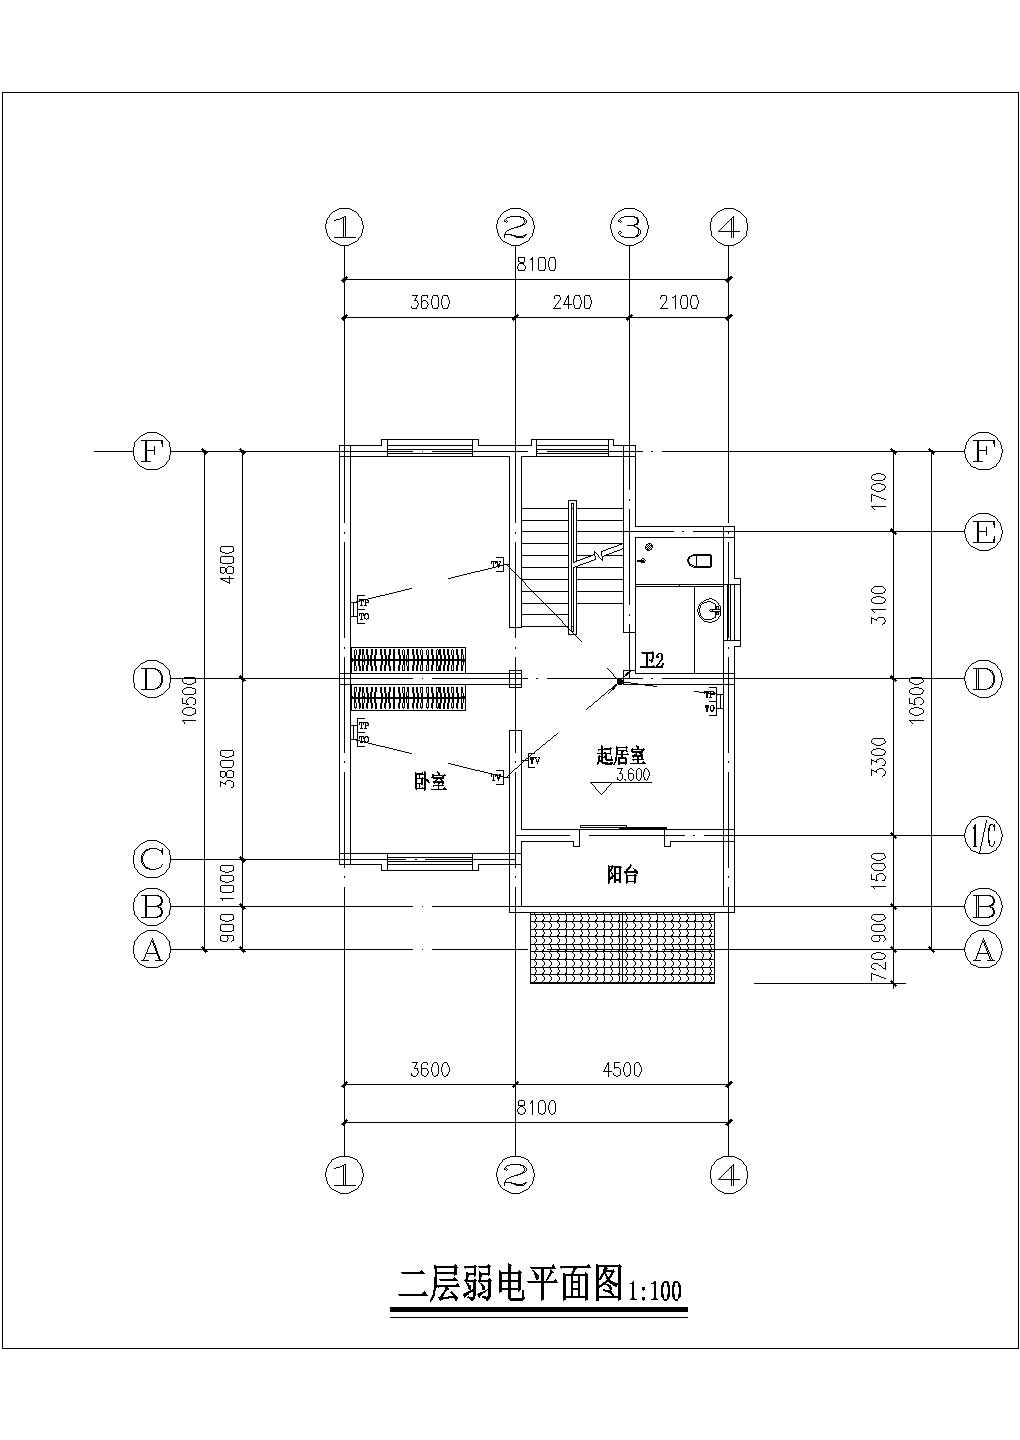 厦门市某村镇194平米3层砖混结构单体别墅水电系统设计CAD图纸